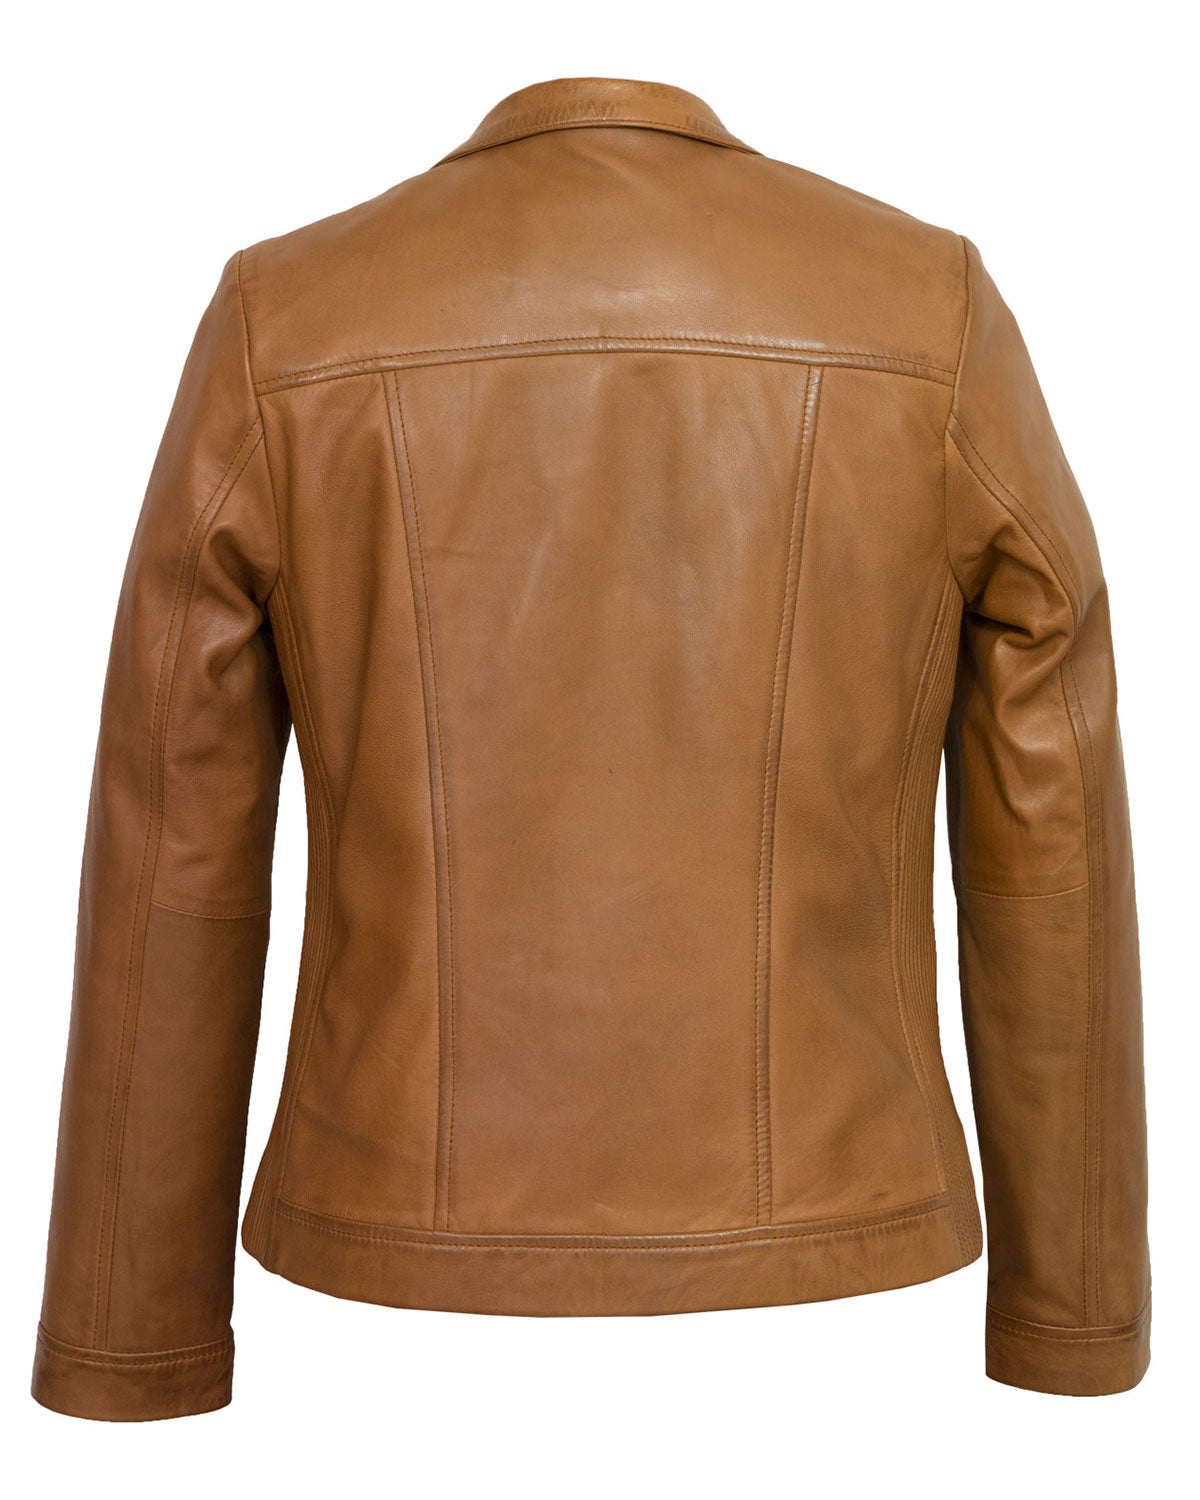 MotorCycleJackets Women’s Tan Leather Jacket